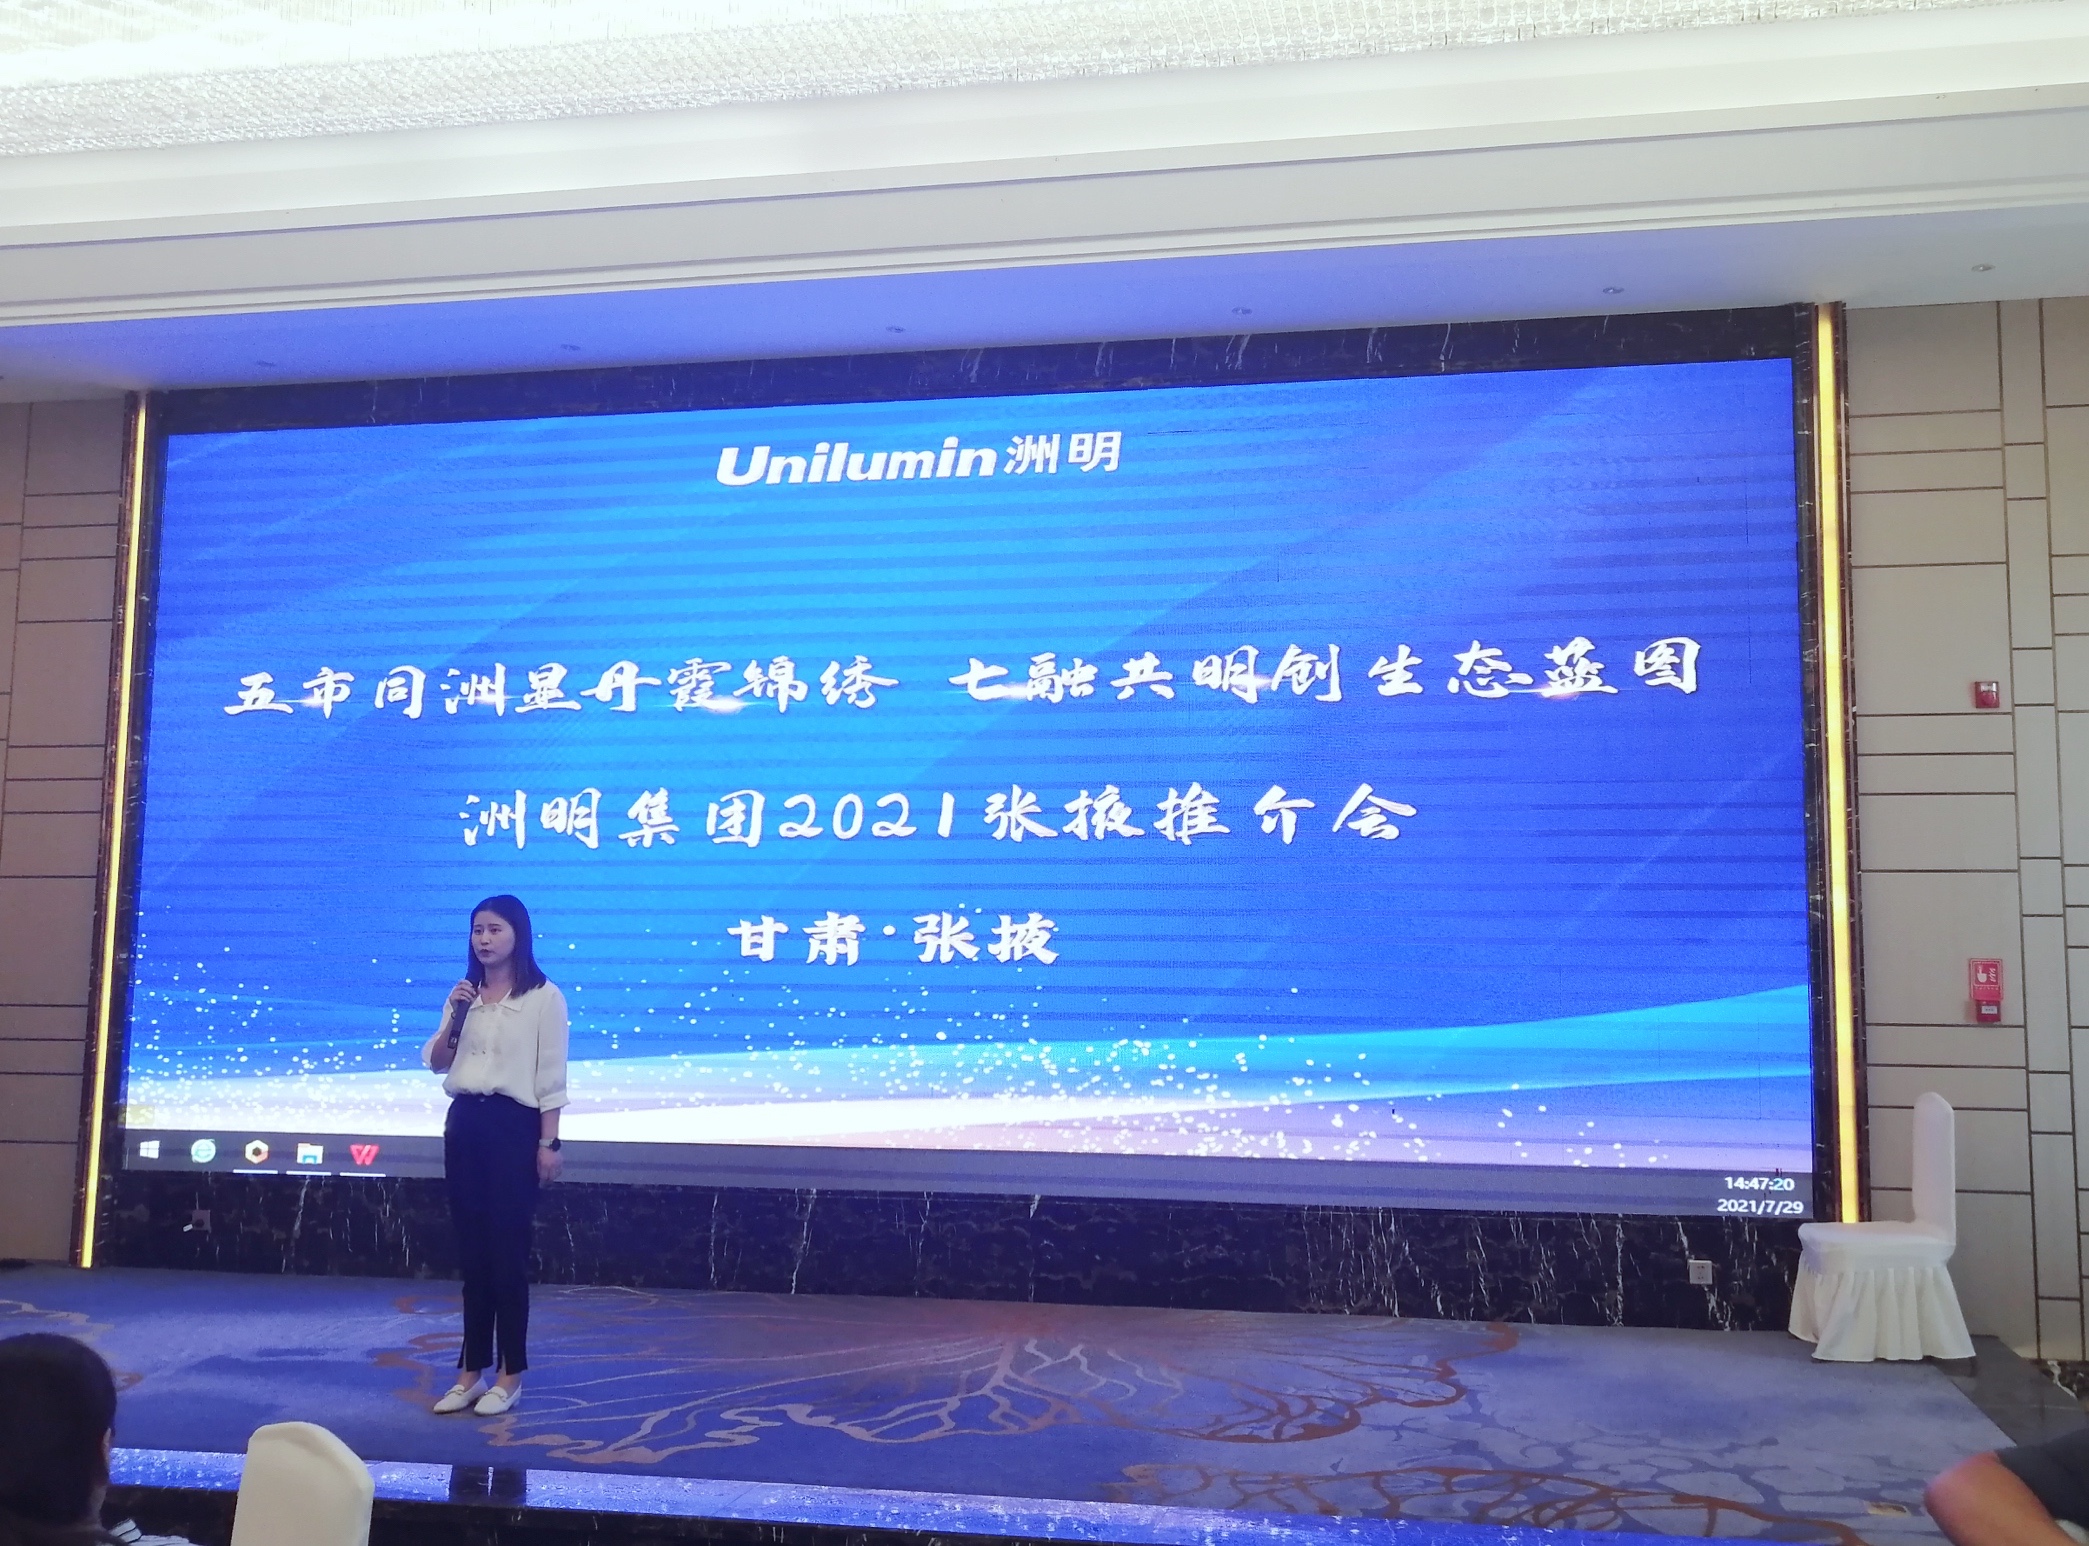 洲明科技甘肃省总经理庞哓佳发表讲话拉起了大会的序幕